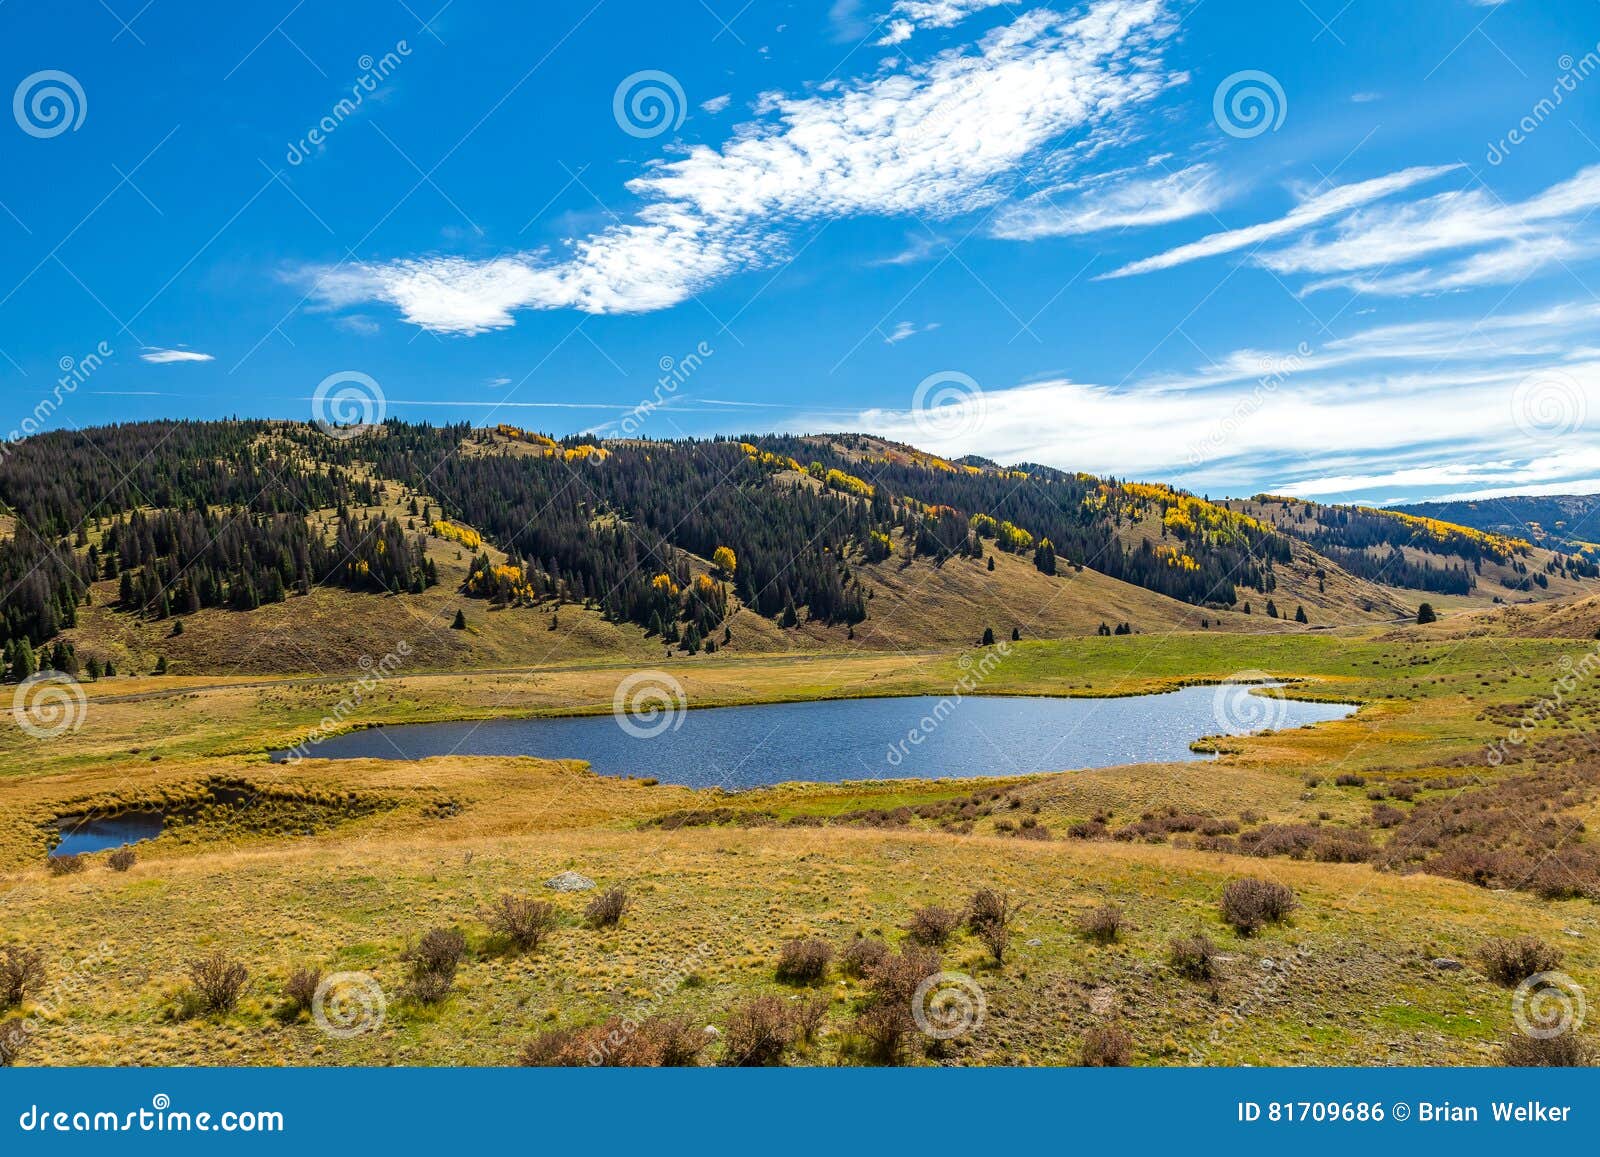 Chama к Antonito. Красивый пейзаж горы с потоками, долинами, и деревьями цвета изменяя вдоль трассы поезда от Chama, Неш-Мексико к Antonito, Колорадо